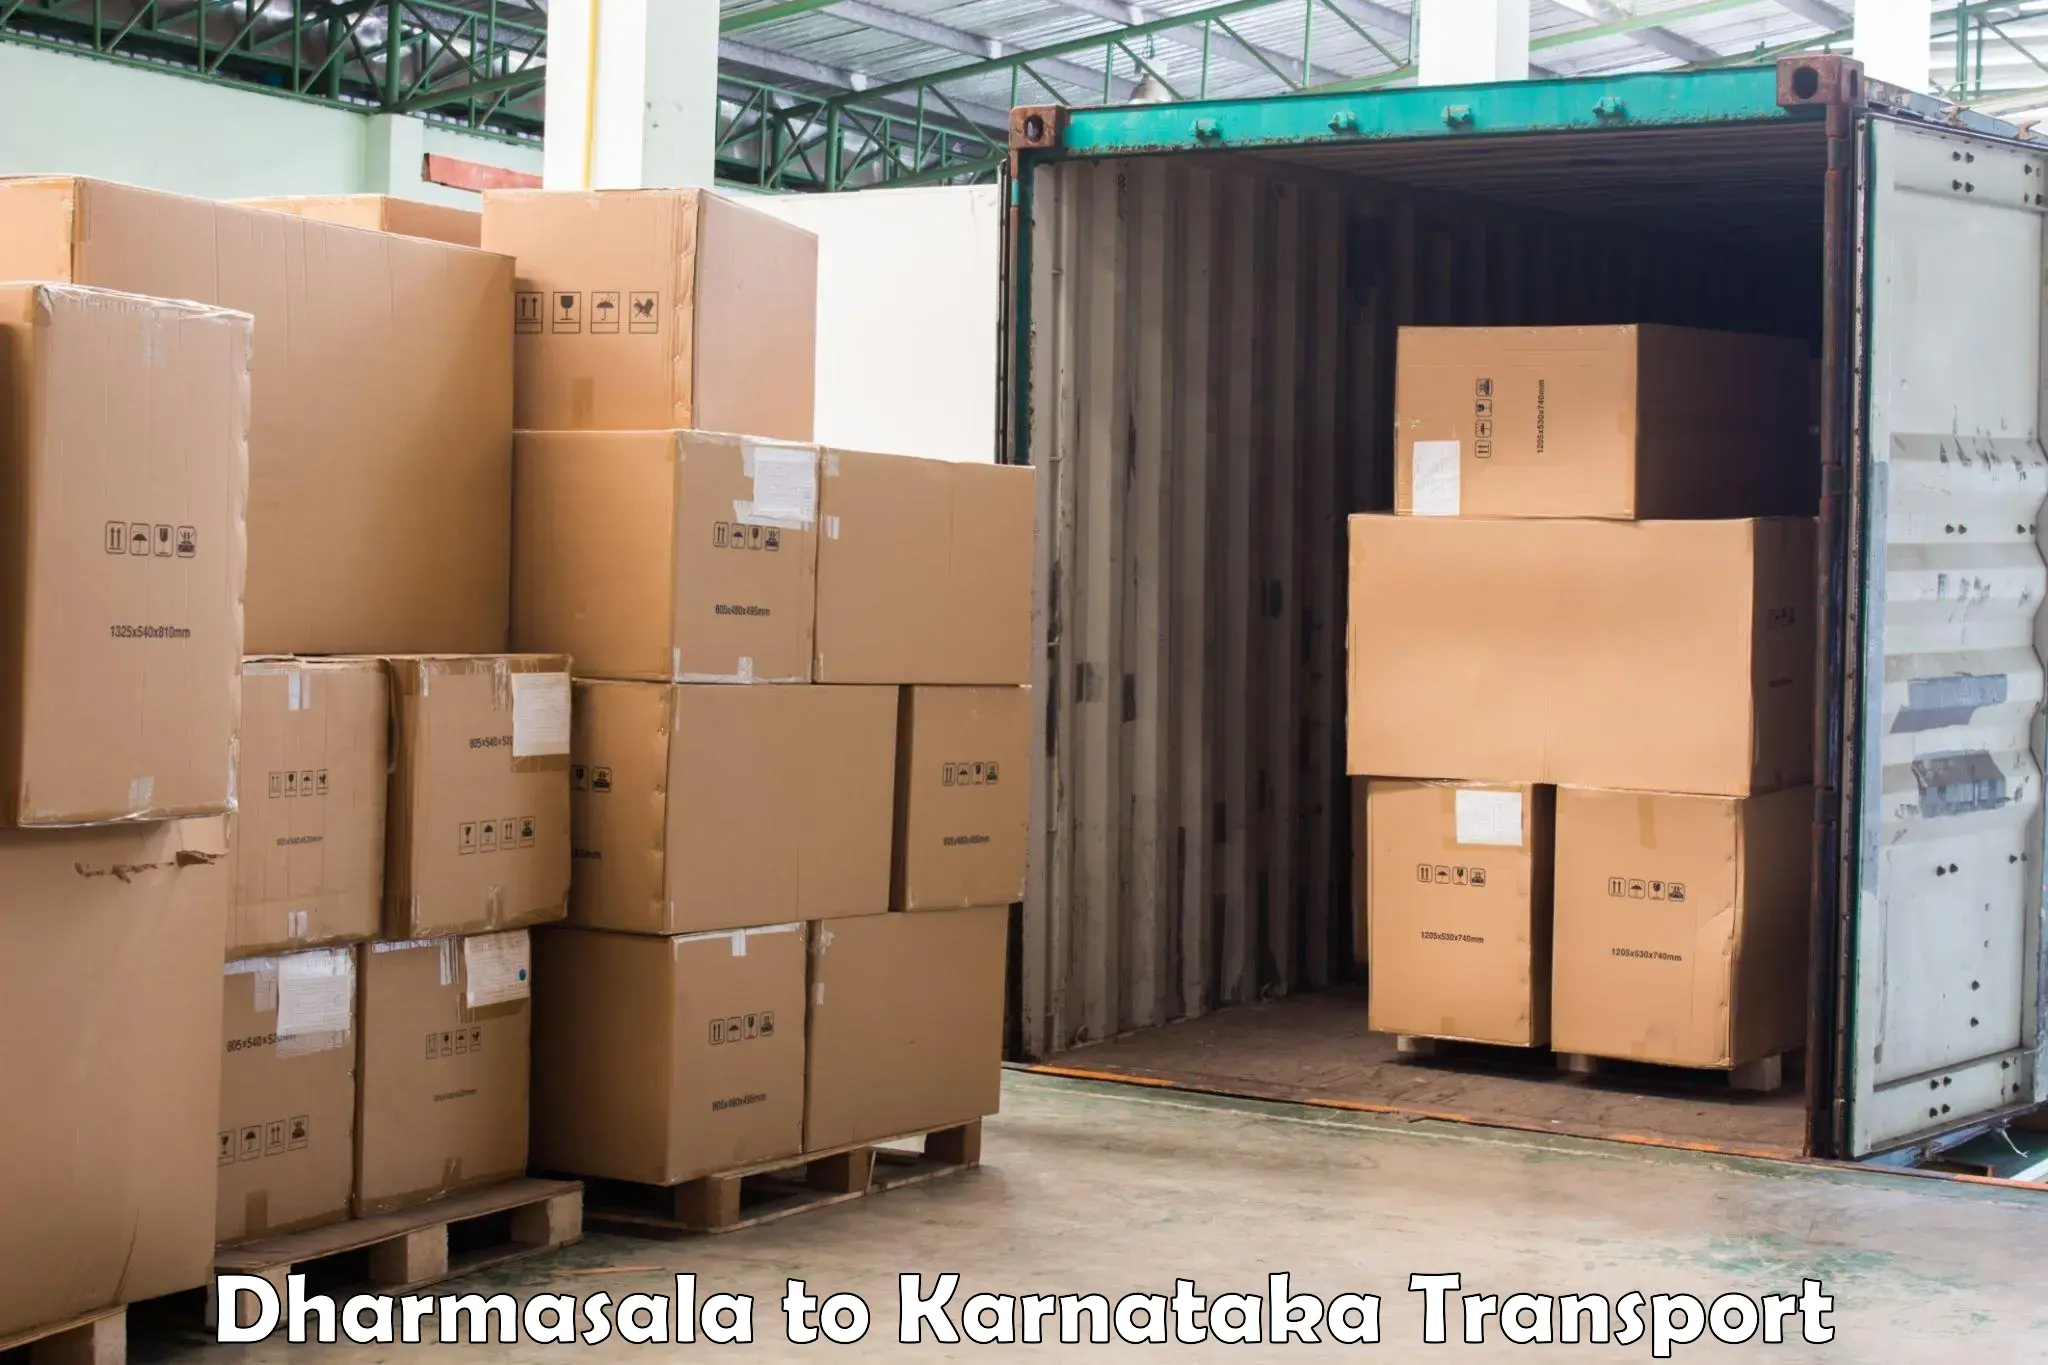 Daily transport service Dharmasala to Bangarapet